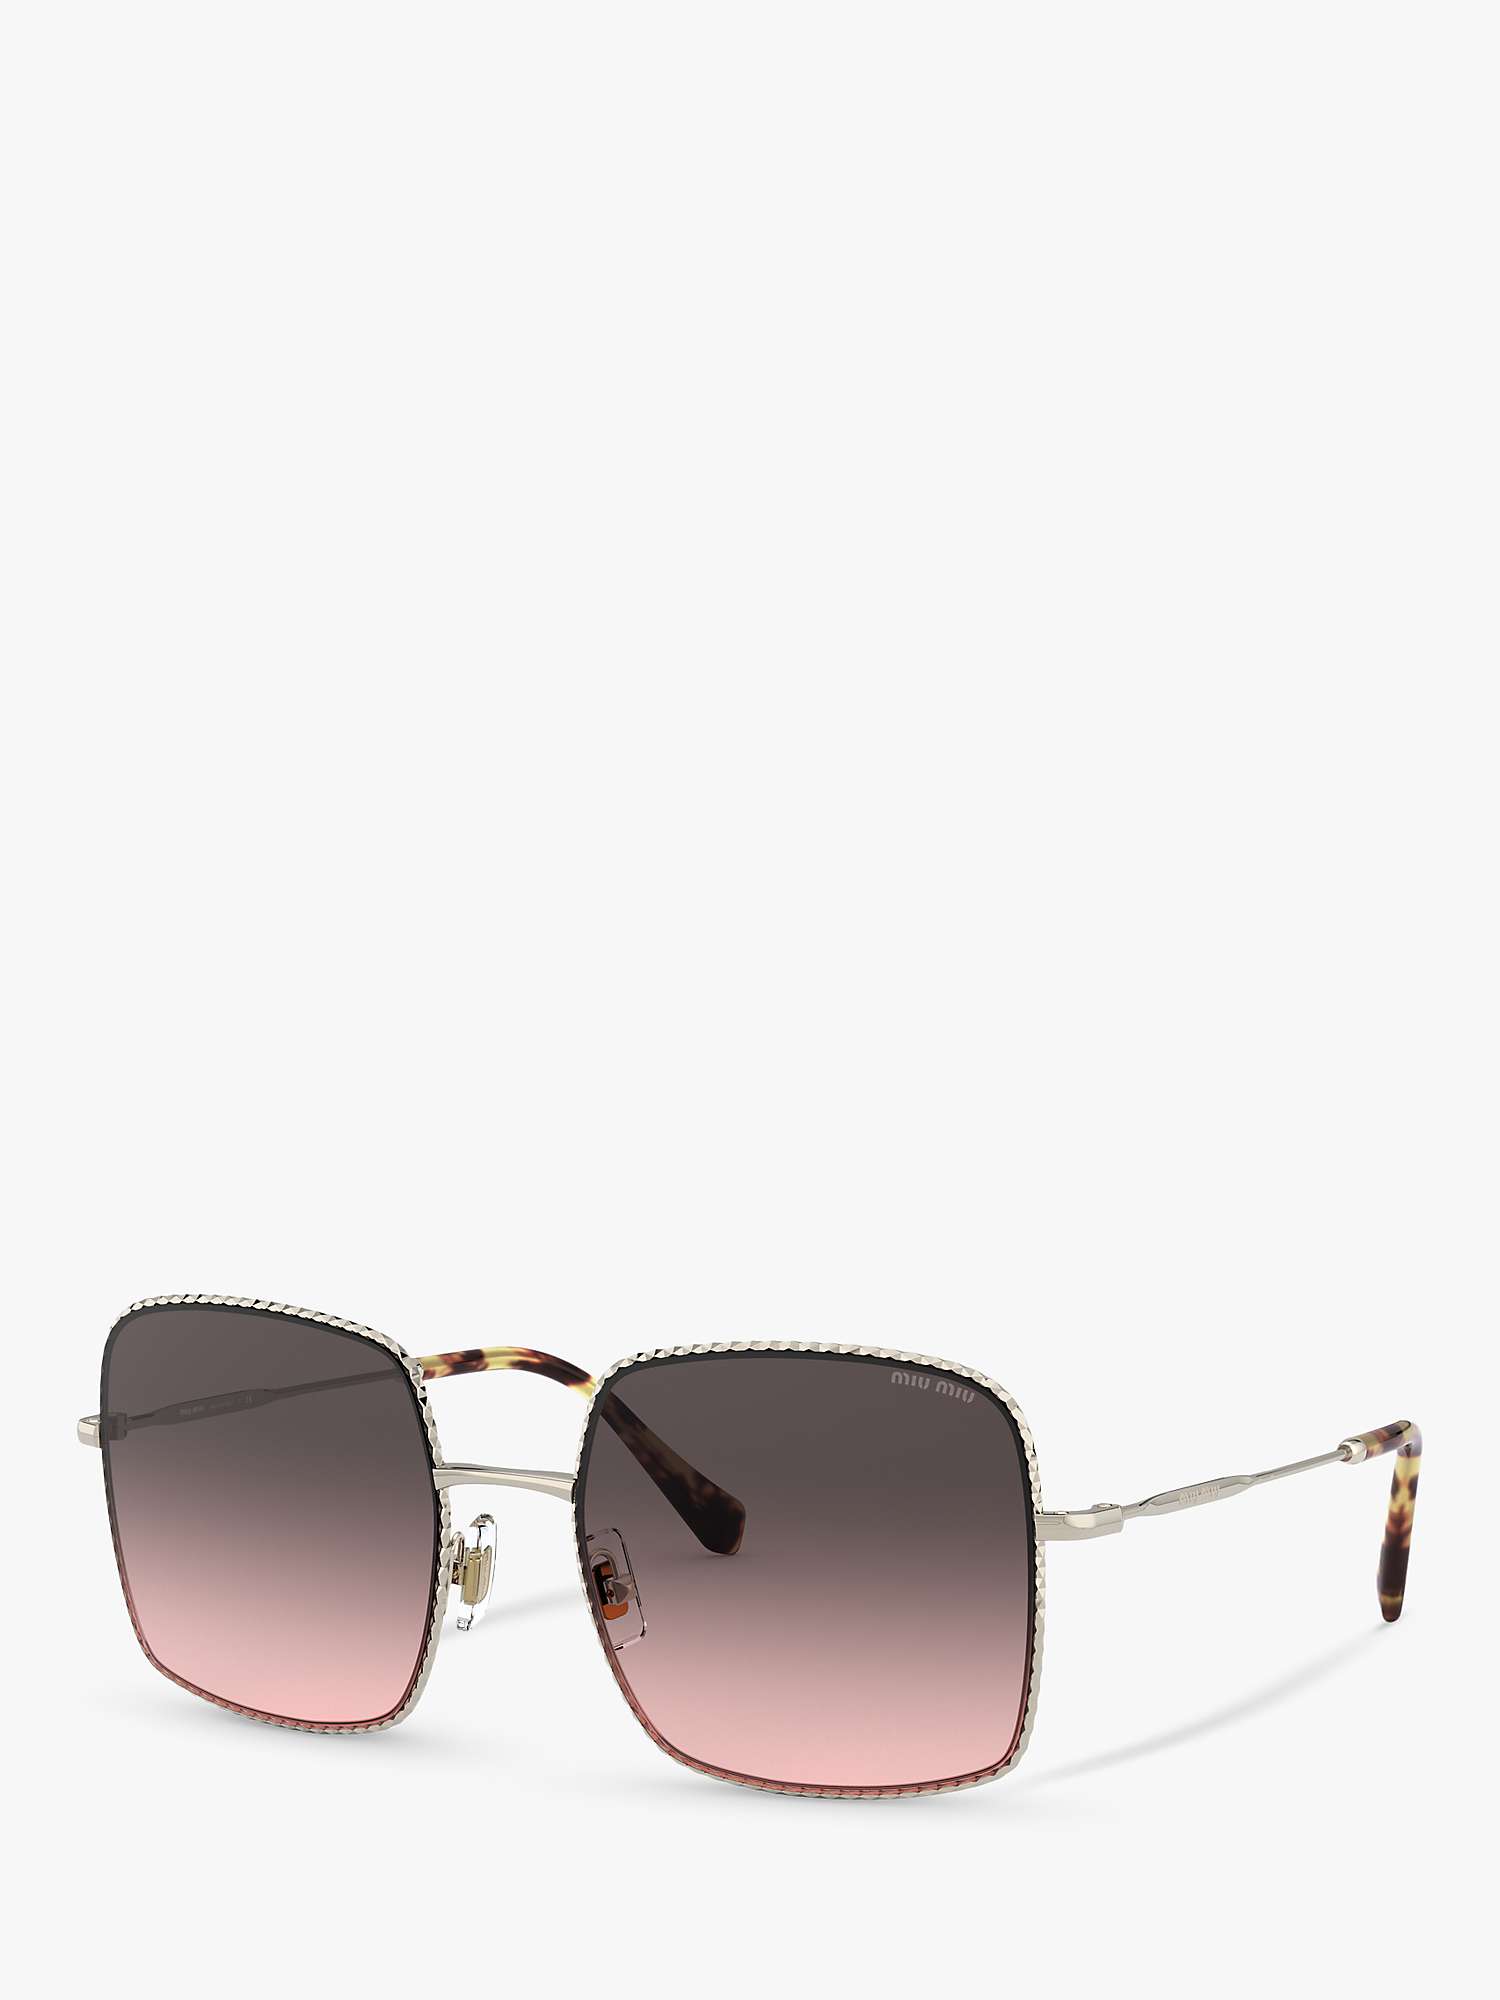 Buy Miu Miu MU 61VS Women's Rectangular Sunglasses, Pale Gold/Pink Grey Gradient Online at johnlewis.com